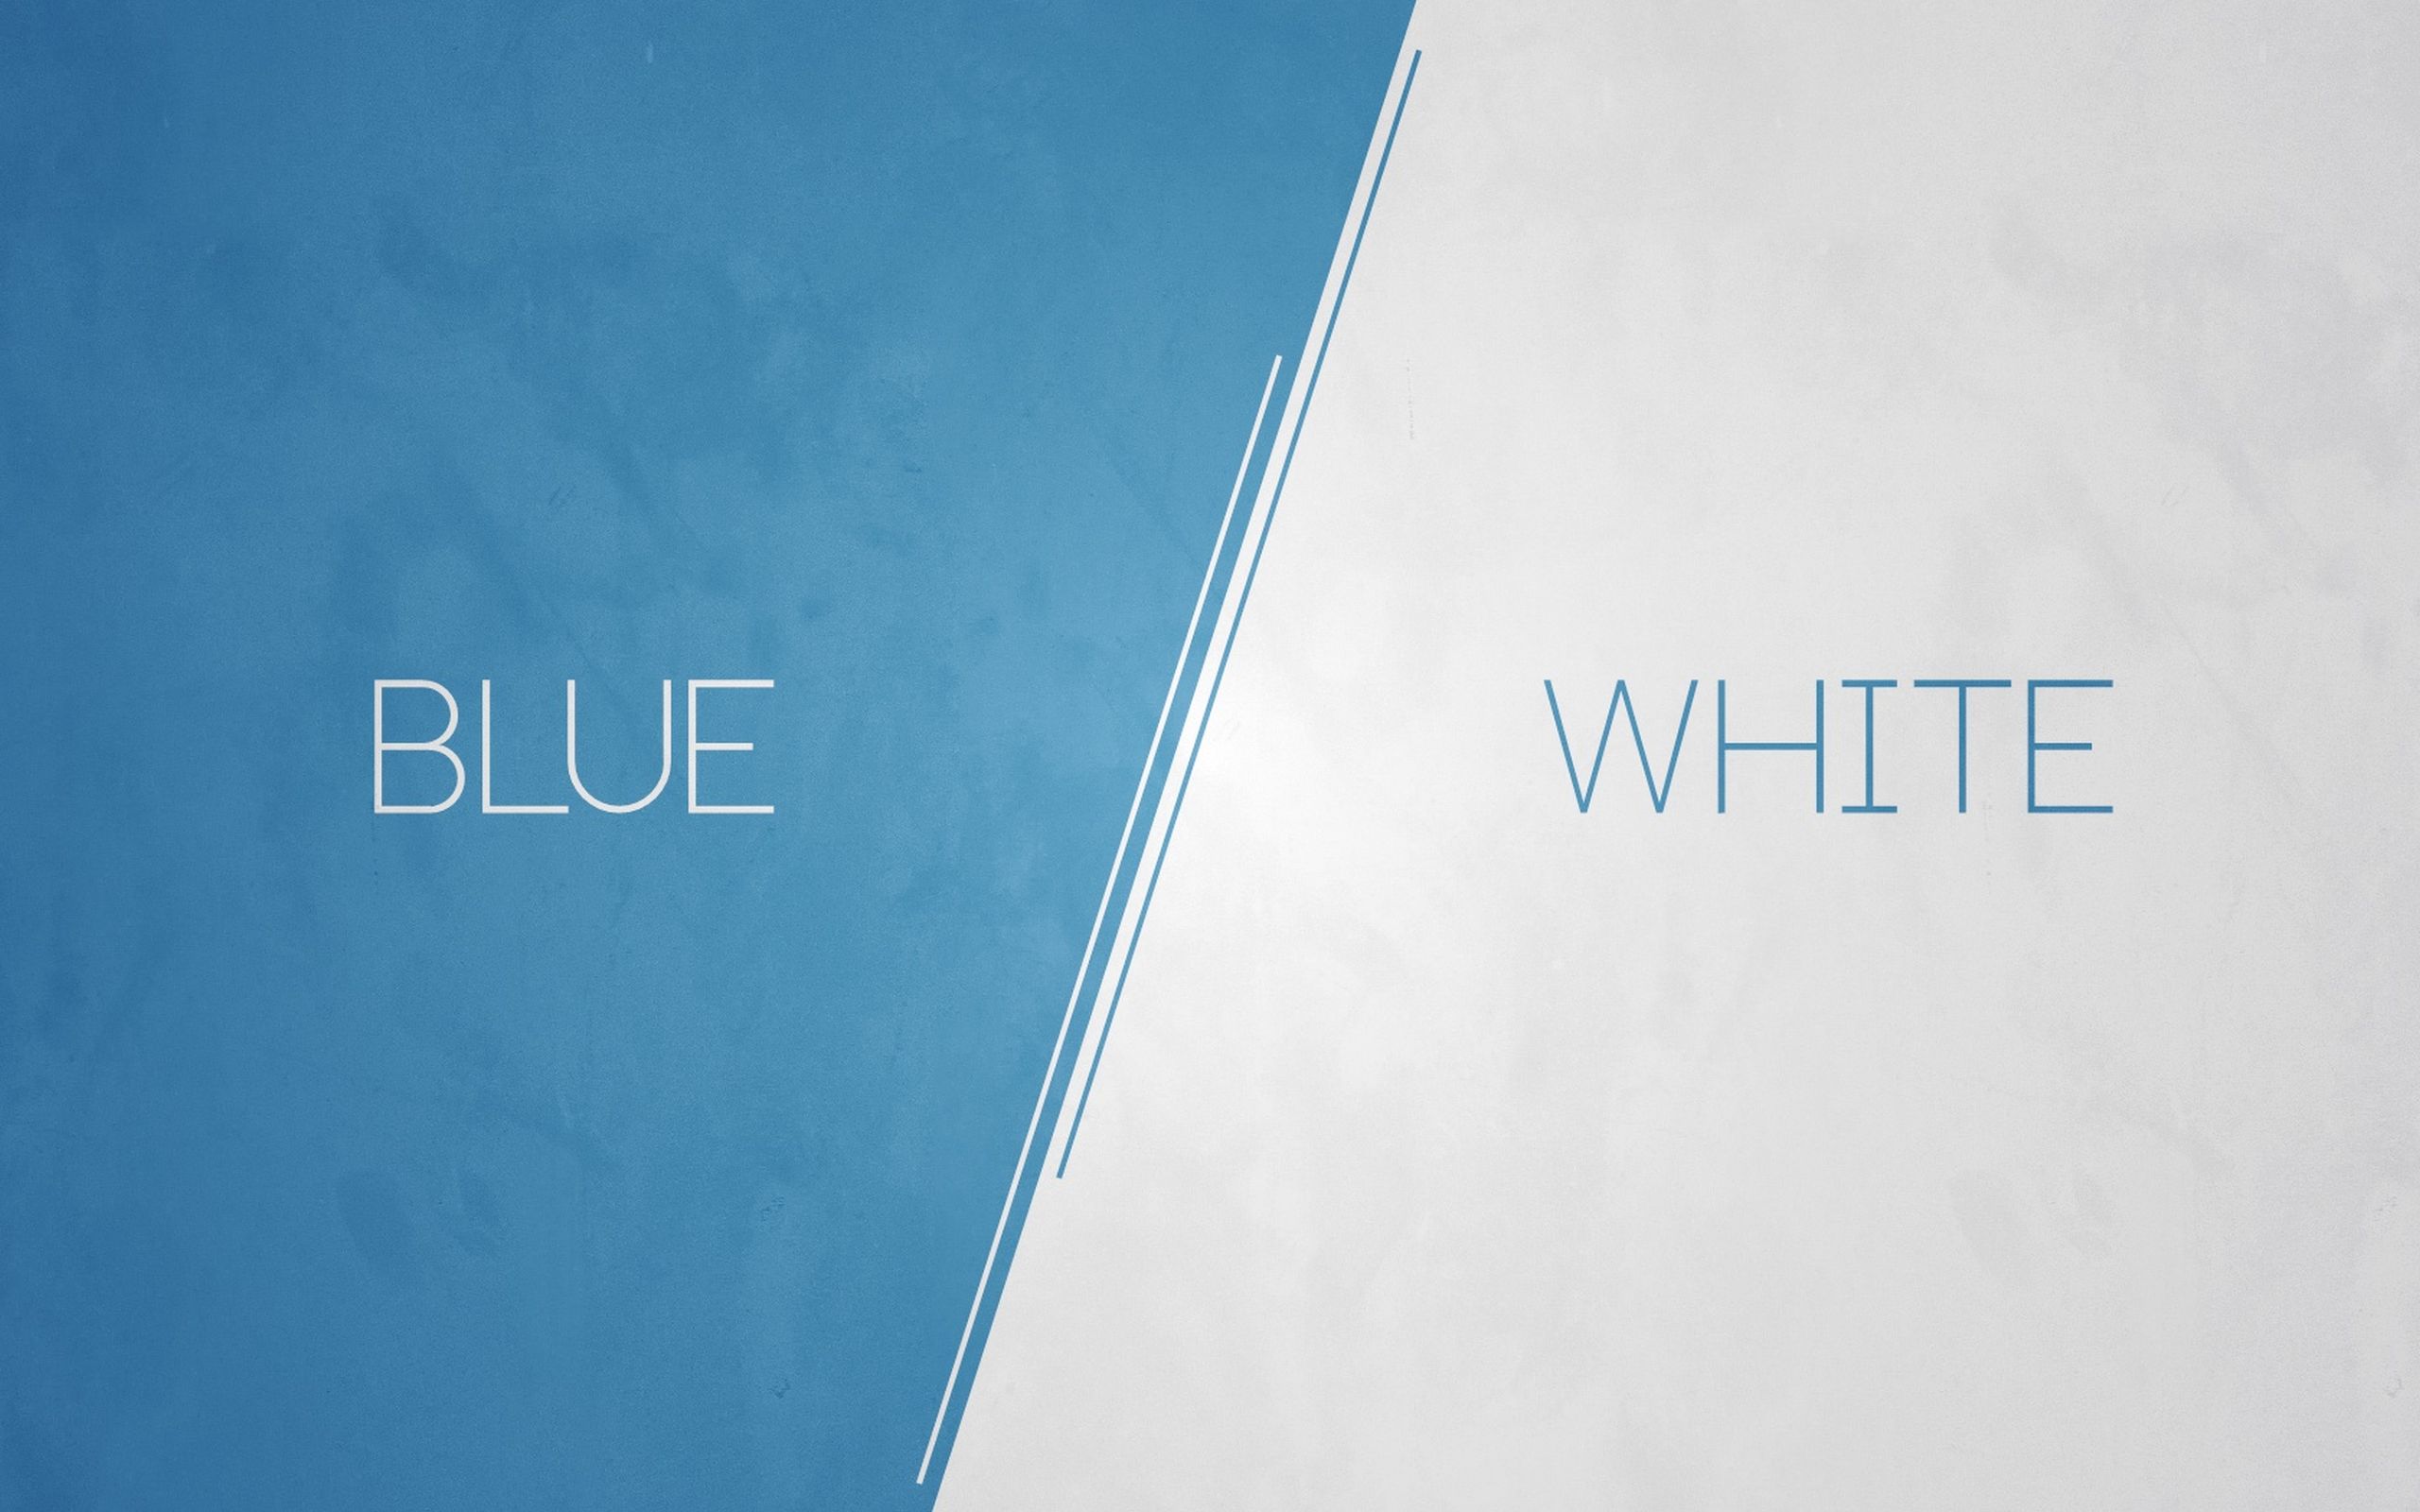 blue, misc, word, minimalist, white